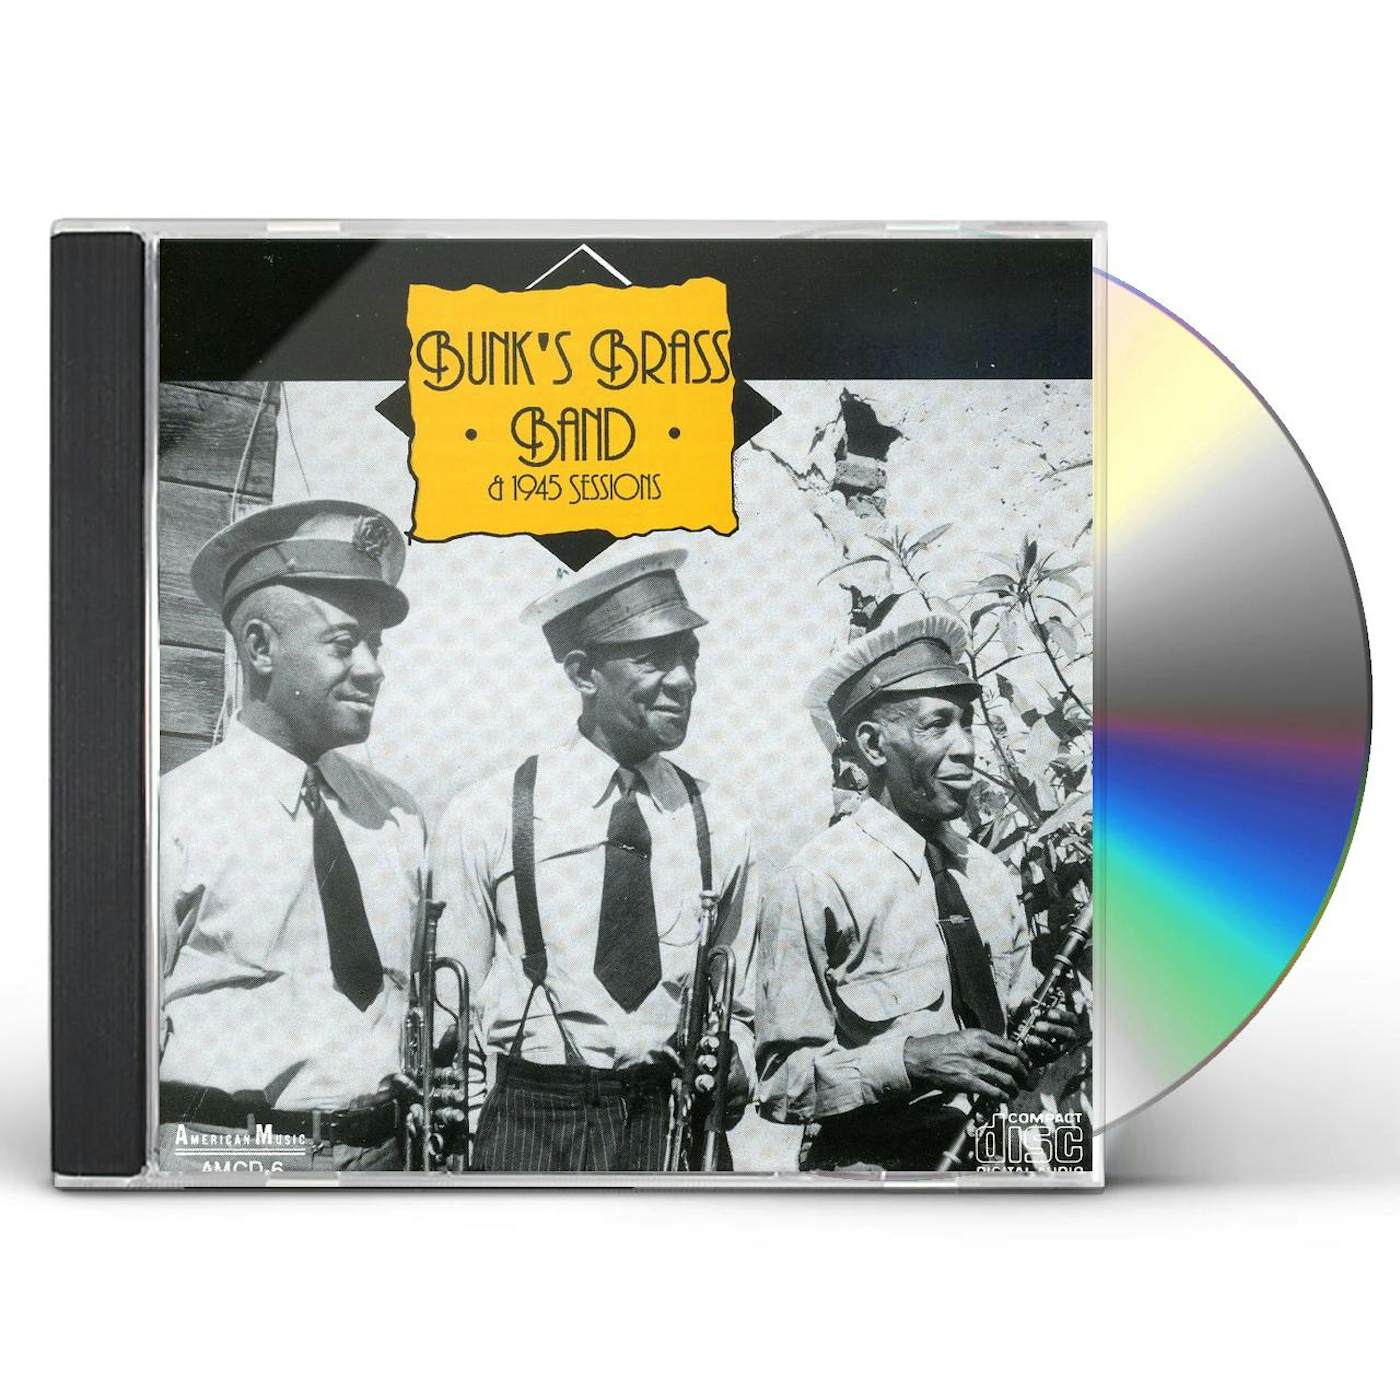 Bunk Johnson BUNKS BRASS BAND & DANCE BAND CD